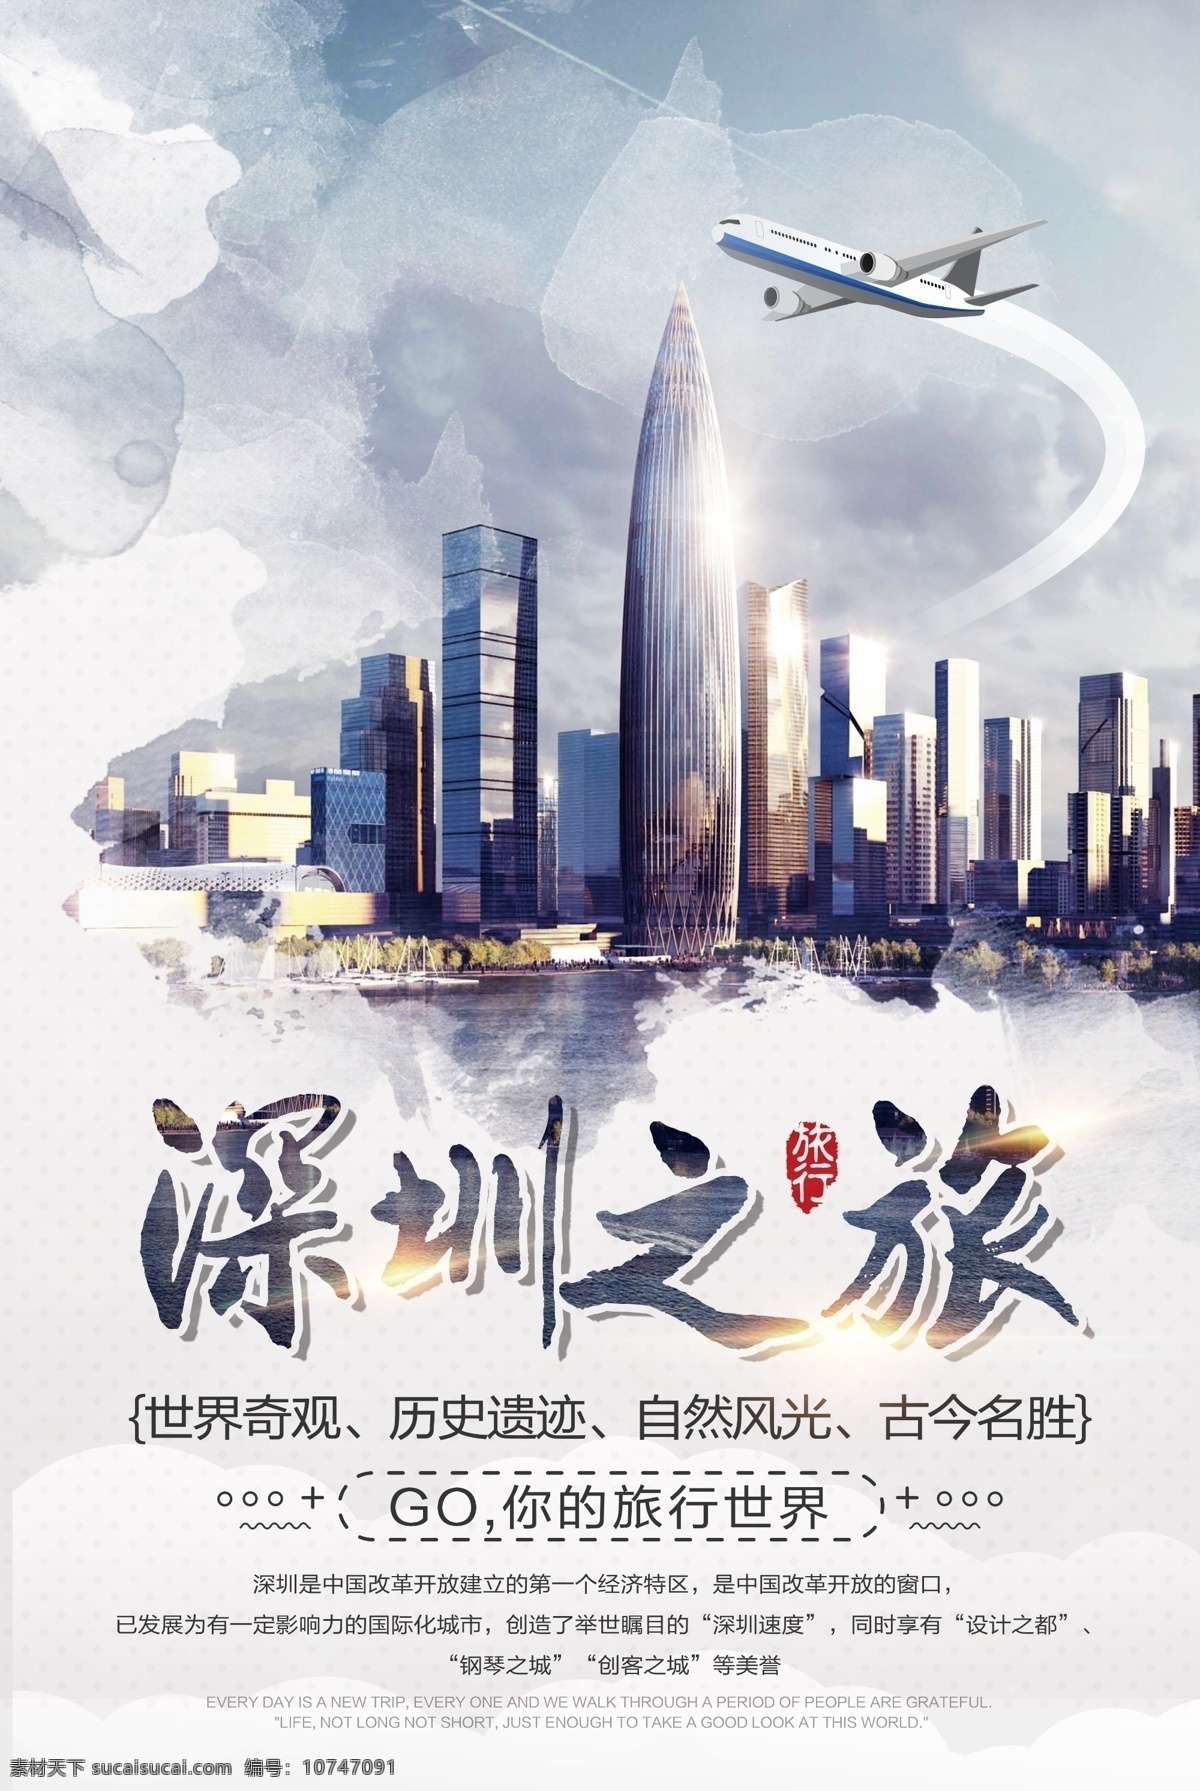 深圳 之旅 旅游景点 促销 宣传海报 深圳之旅 旅游 景点 宣传 海报 旅行